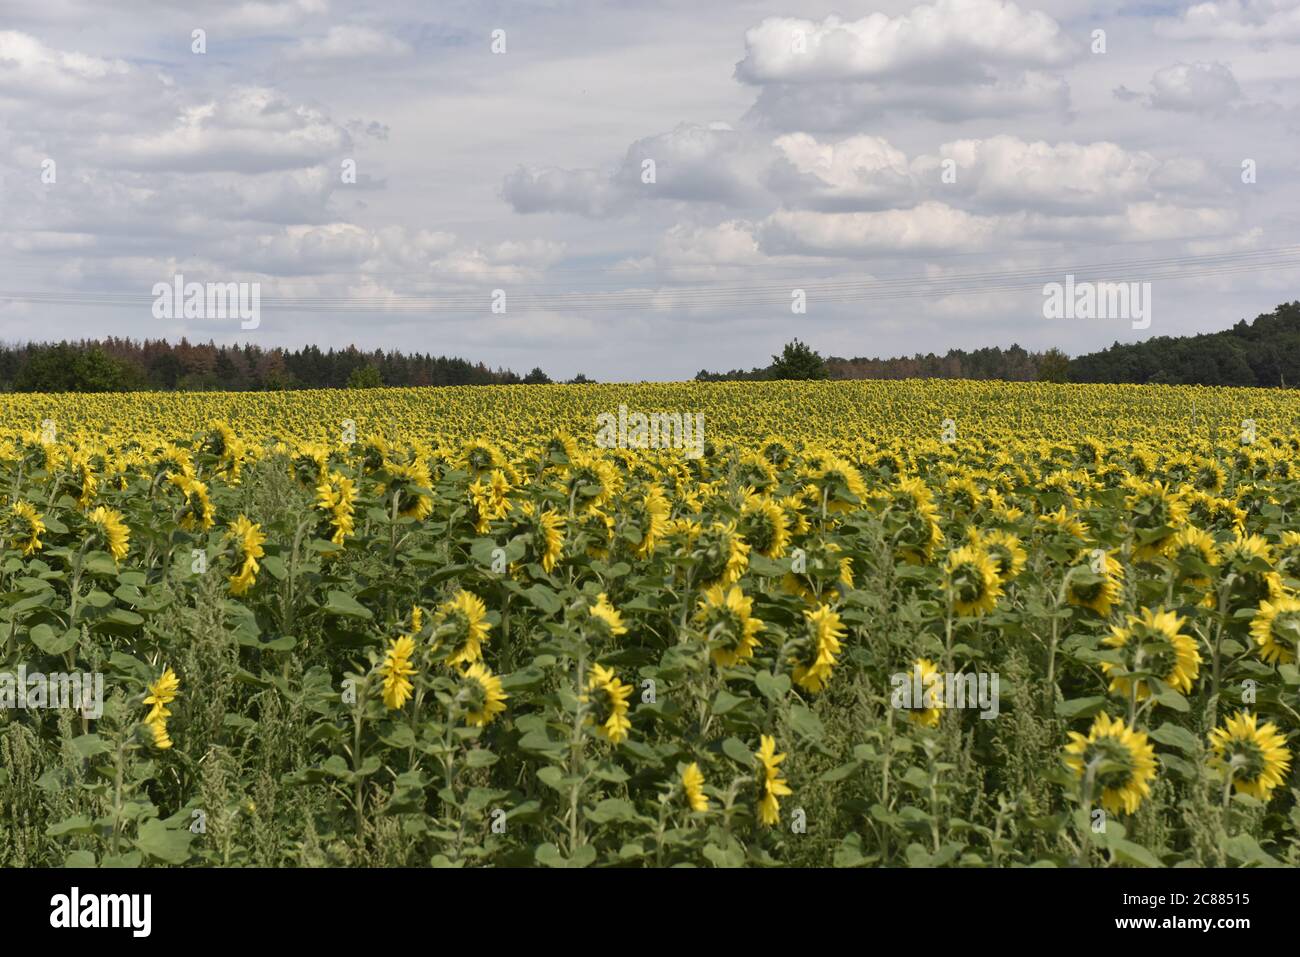 Many sunflowers in luminous Yellow on a field, Viele Sonnenblumen in leuchtendem Gelb auf einem Feld am Burg Regenstein. Stock Photo